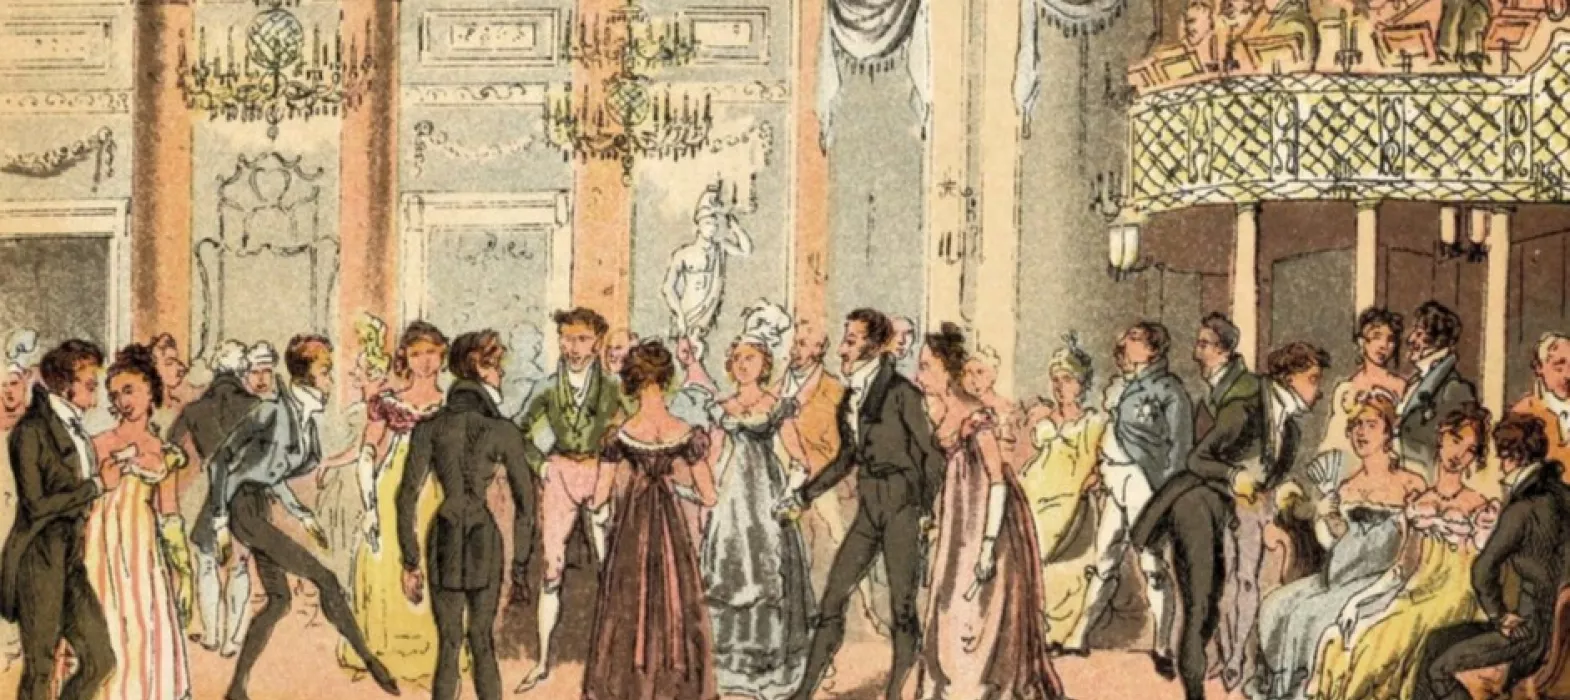 An illustration of an eighteenth century dance